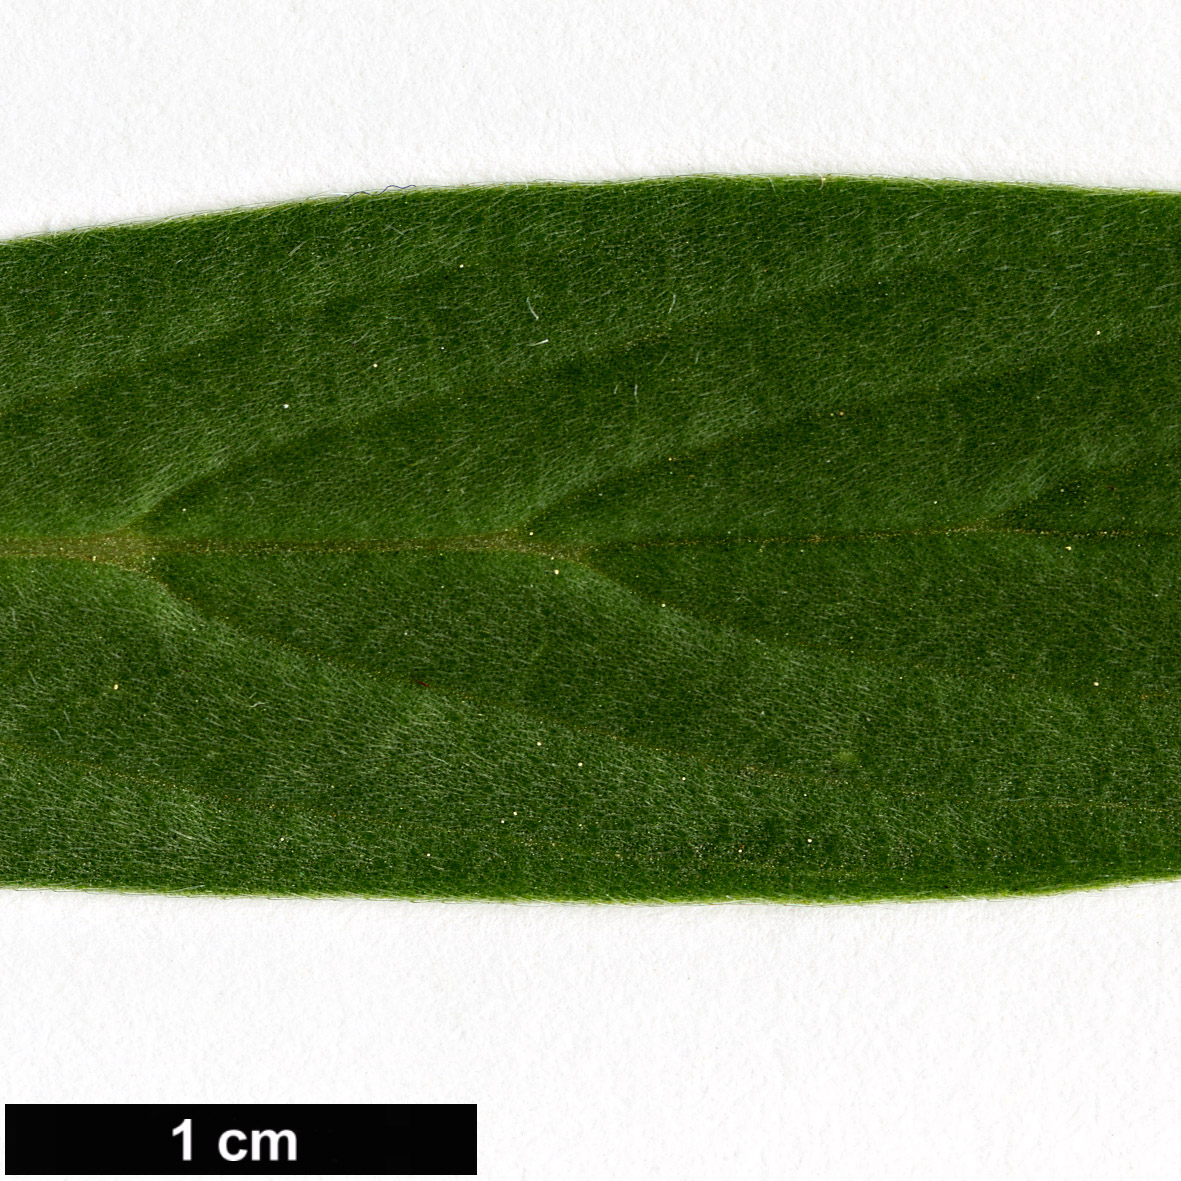 High resolution image: Family: Boraginaceae - Genus: Echium - Taxon: virescens